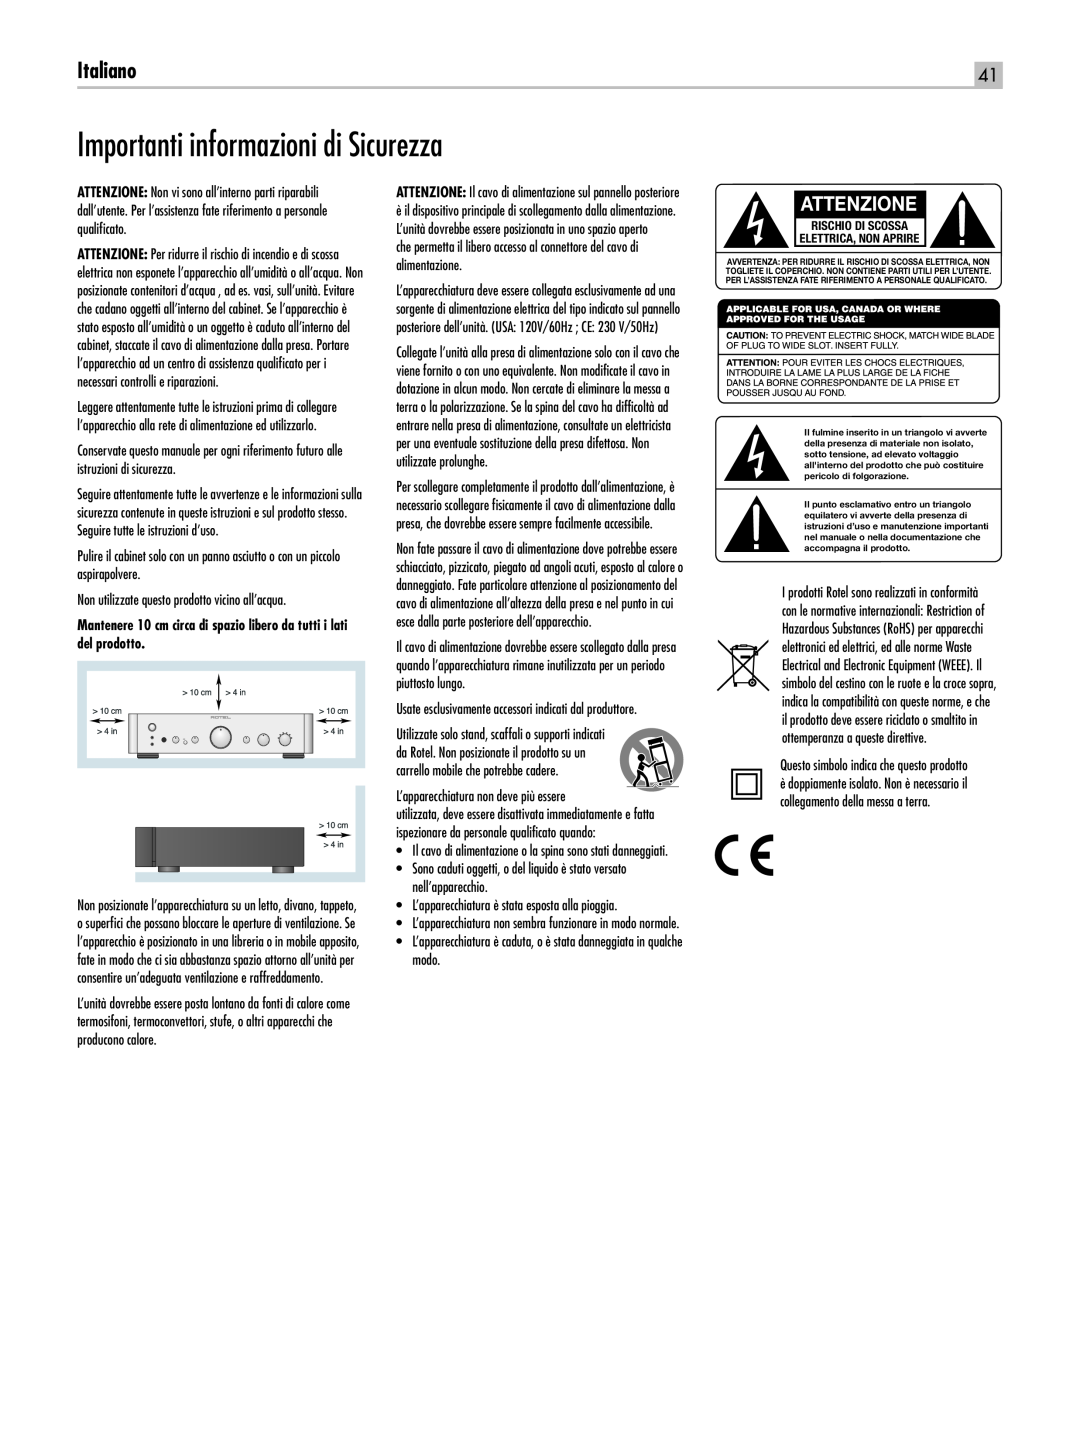 Rotel RC-1550 owner manual Importanti informazioni di Sicurezza, Italiano, Attenzione 